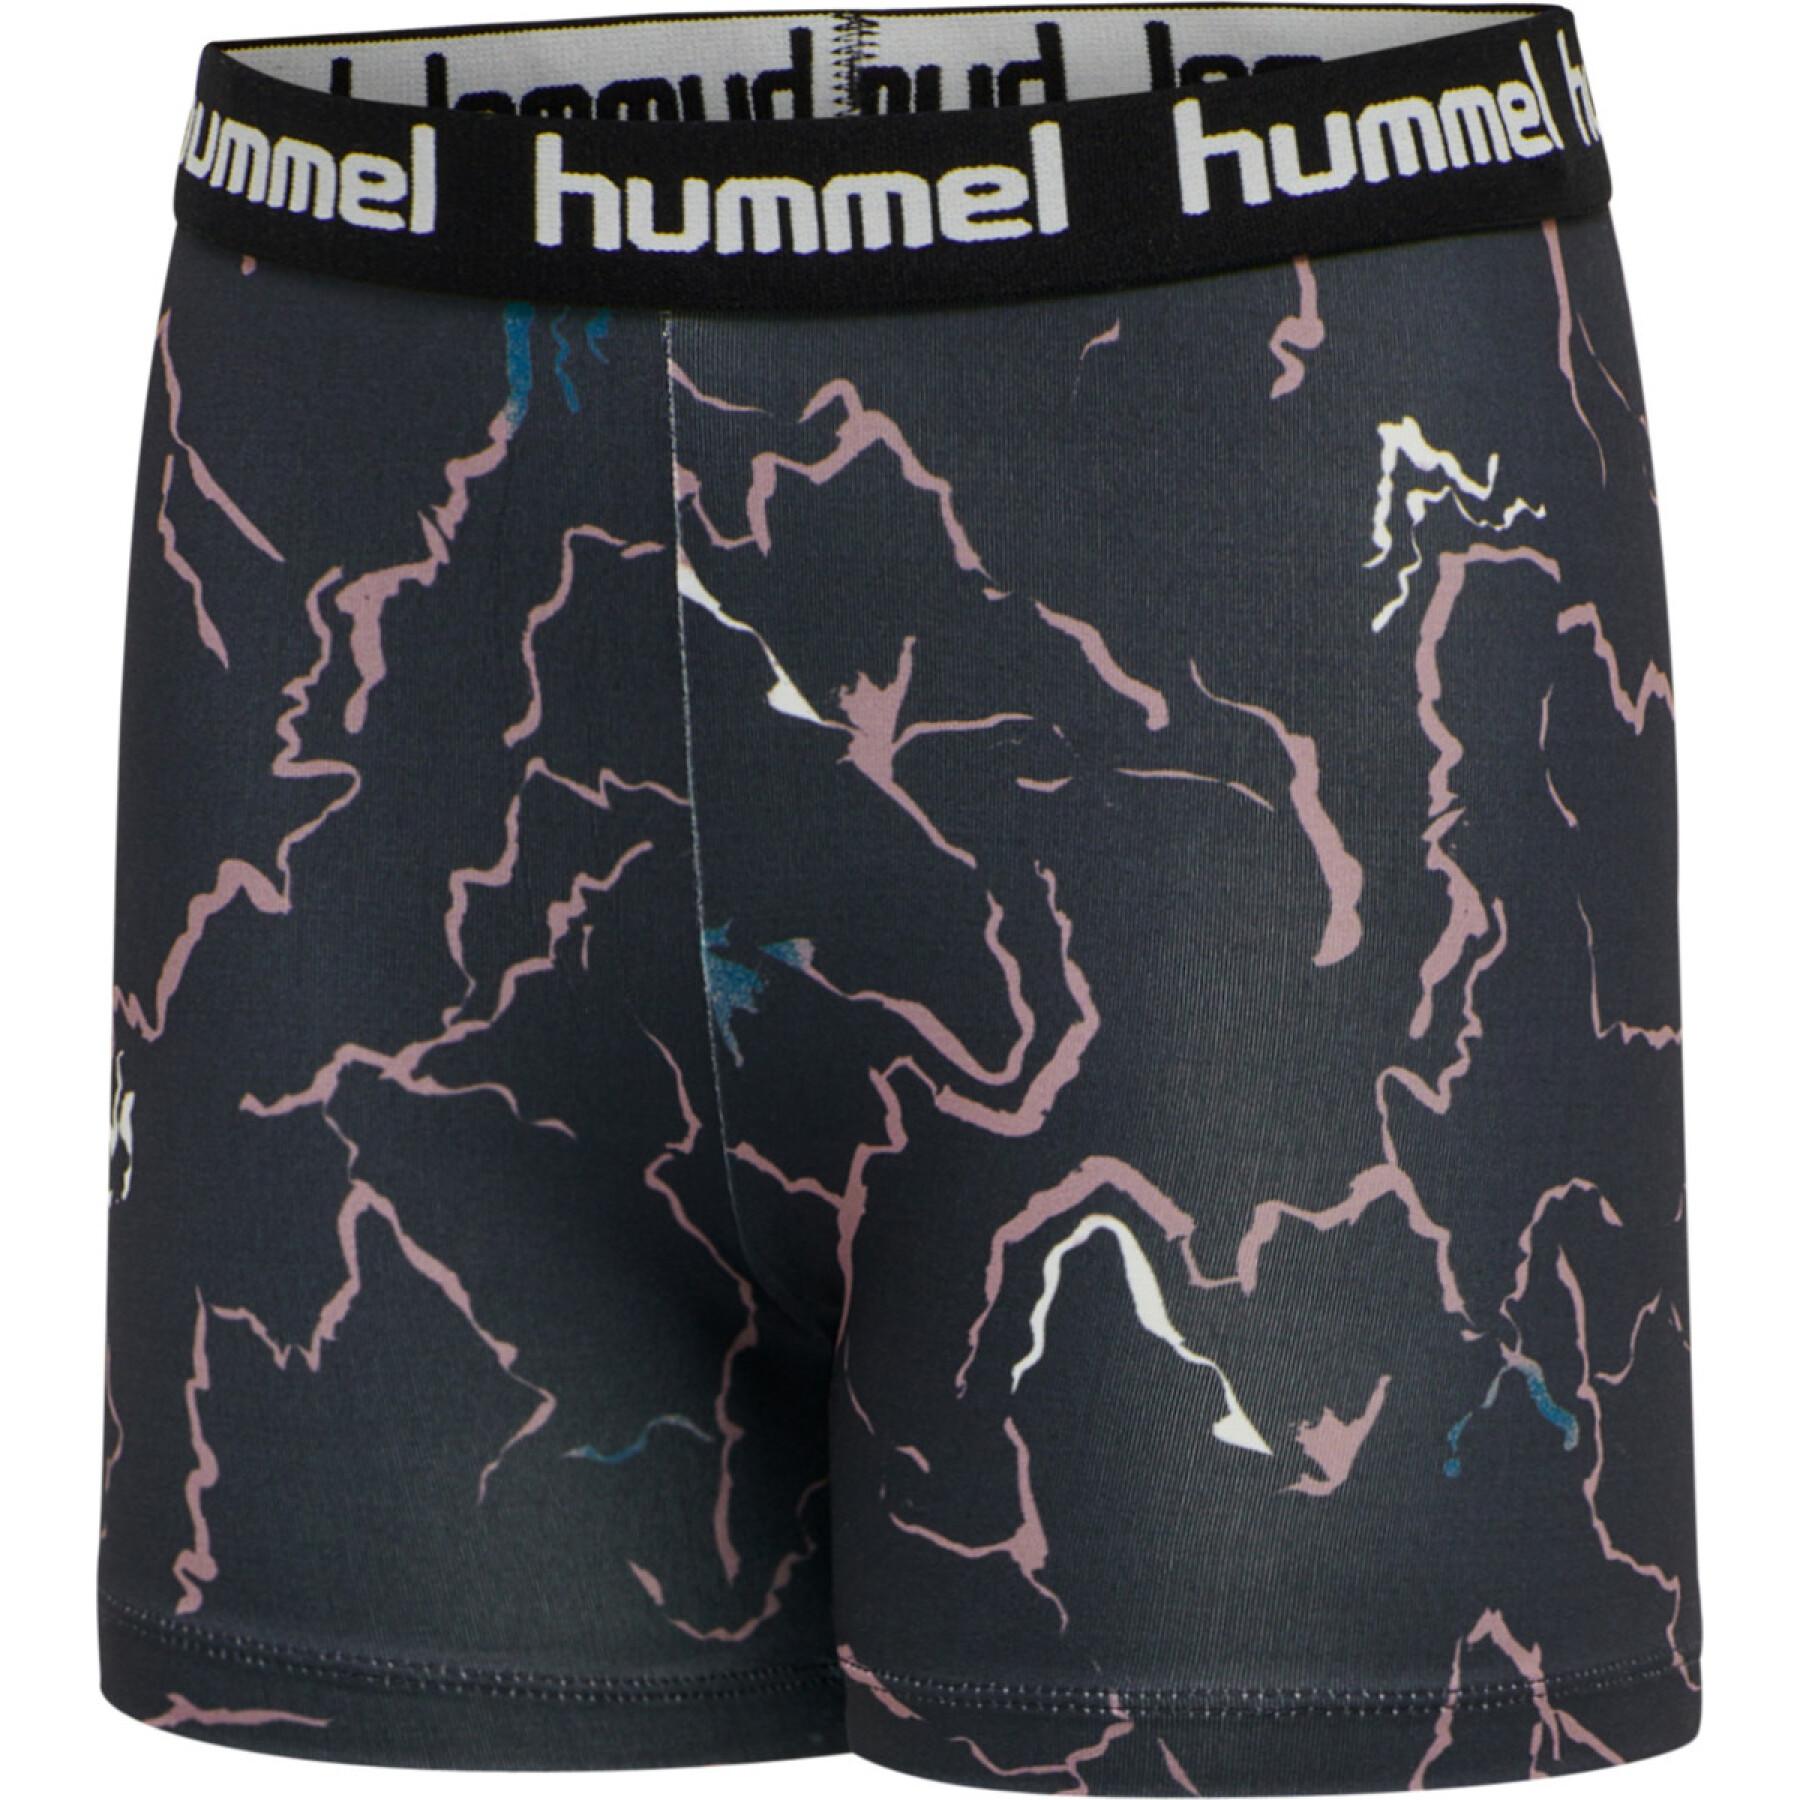 Kinder shorts Hummel hmlmimmi tight